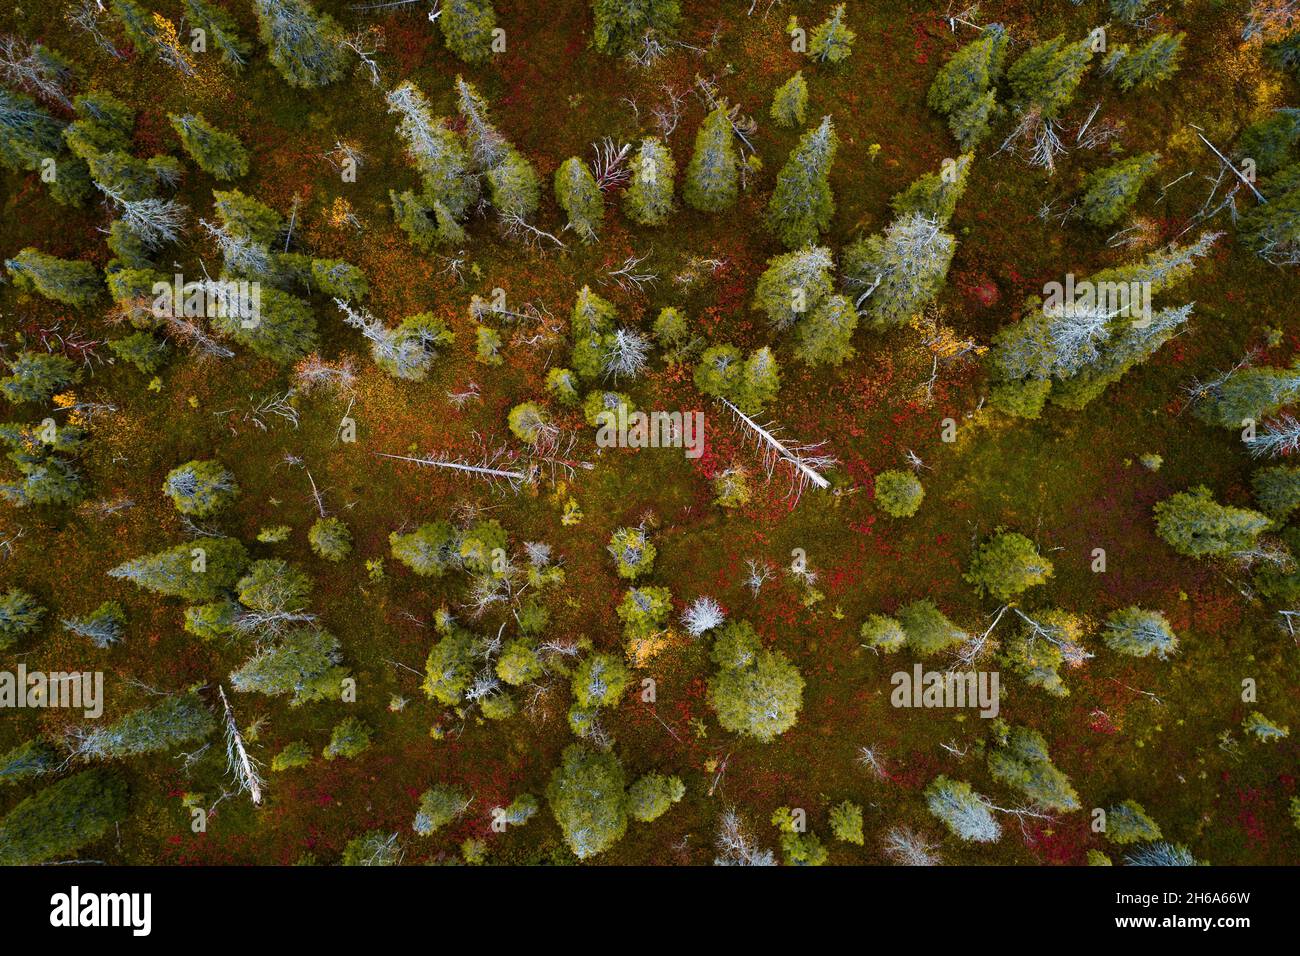 Une vue aérienne du feuillage d'automne coloré dans le parc national de Riisitunturi avec une belle forêt de taïga et des épinettes mortes dans le nord de la Finlande. Banque D'Images